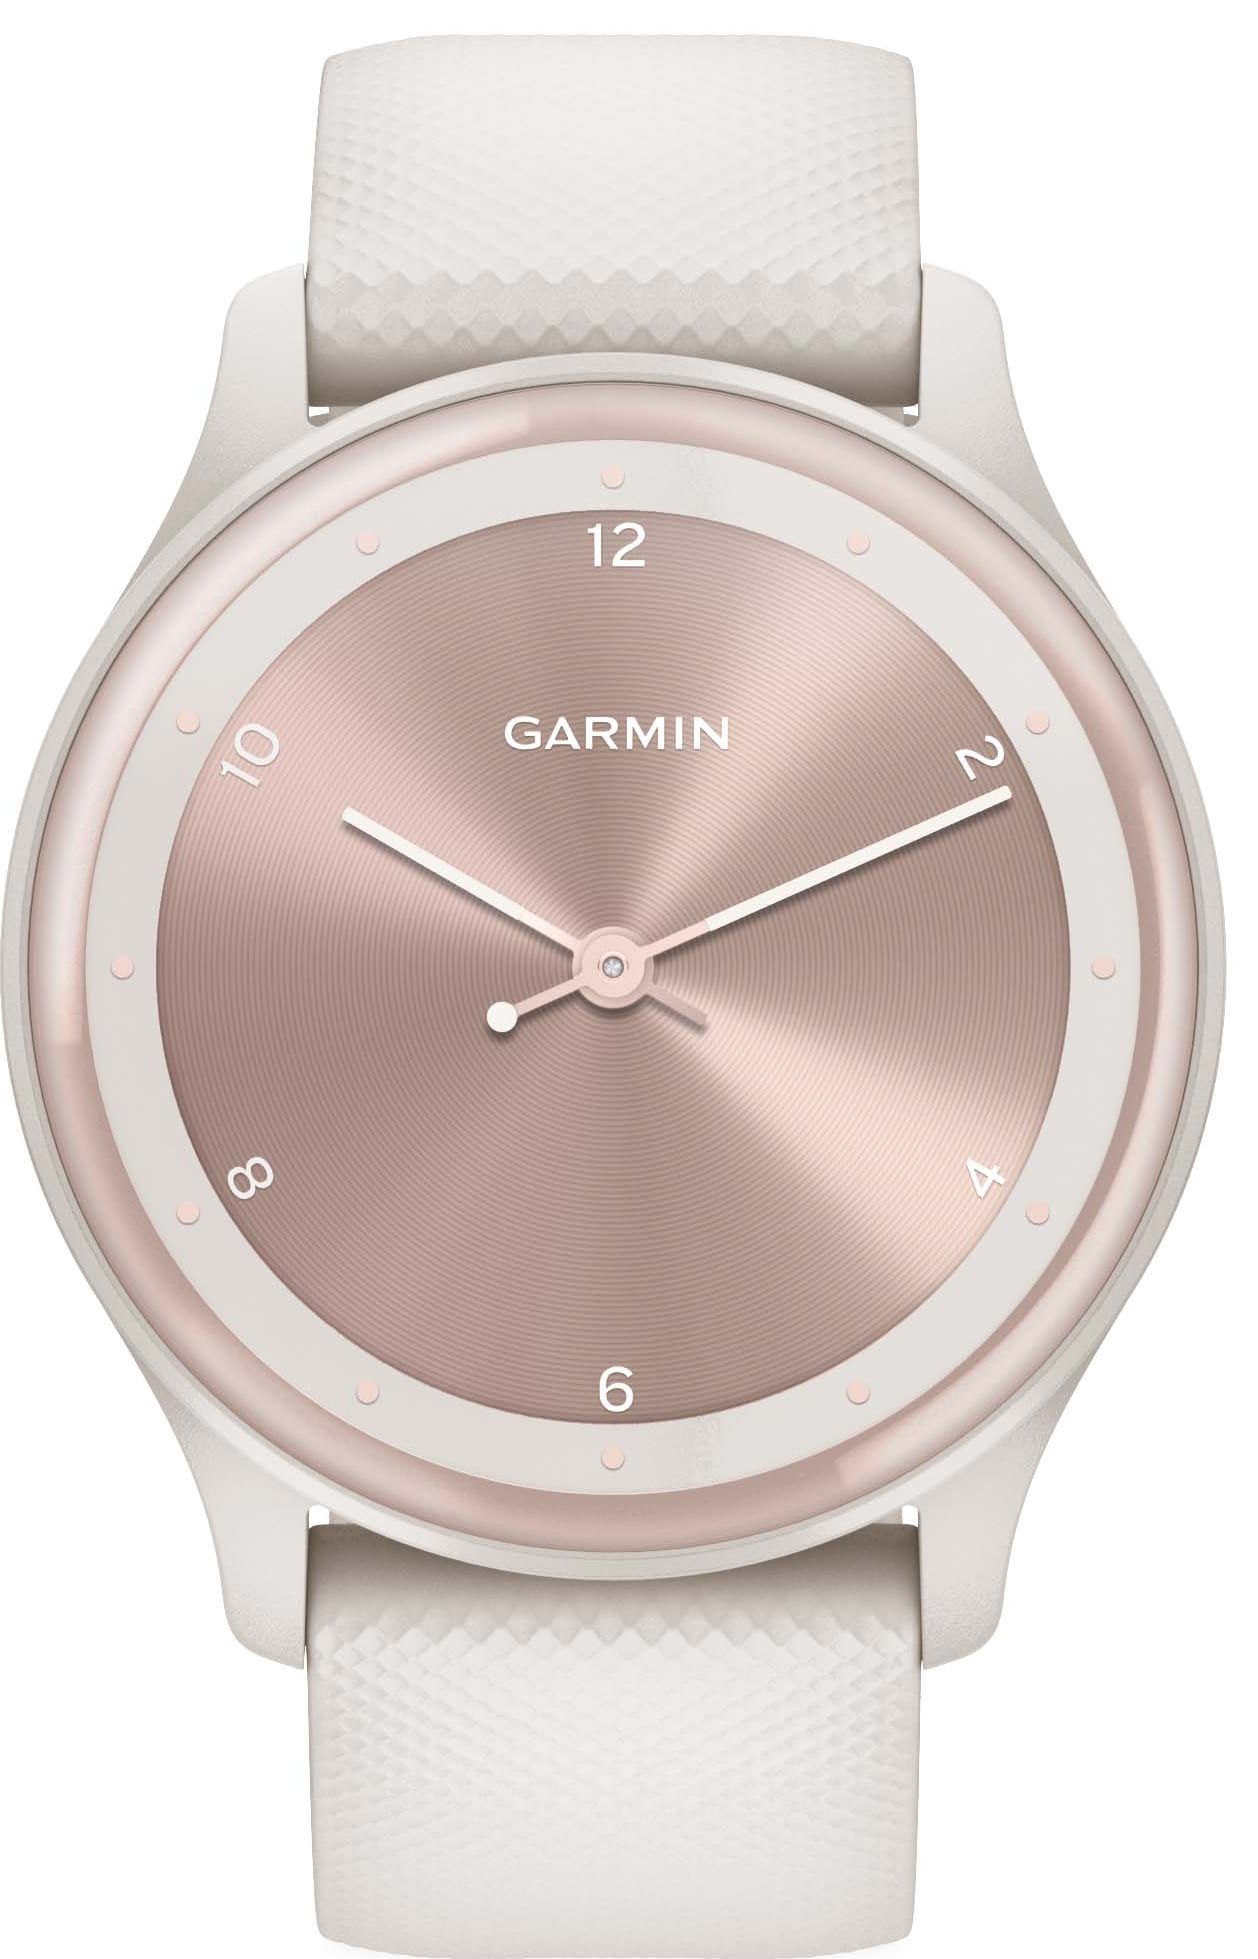 Besøg bedsteforældre Kom op Diskant Garmin Vivomove Sport hybrid smartwatch (ivory) | Elgiganten